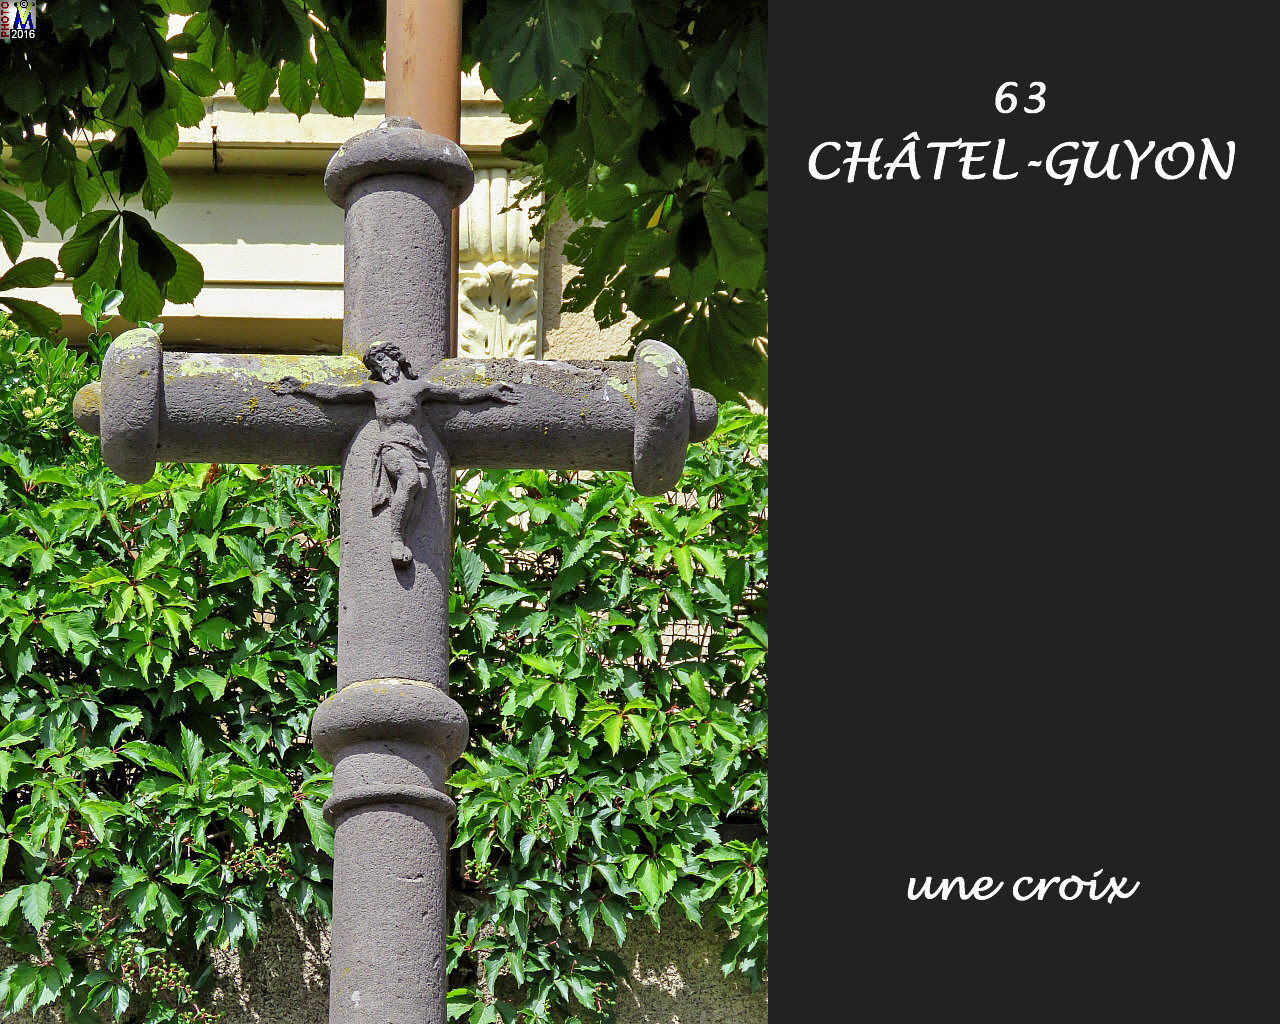 63CHATEL-GUYON_croix_120.jpg